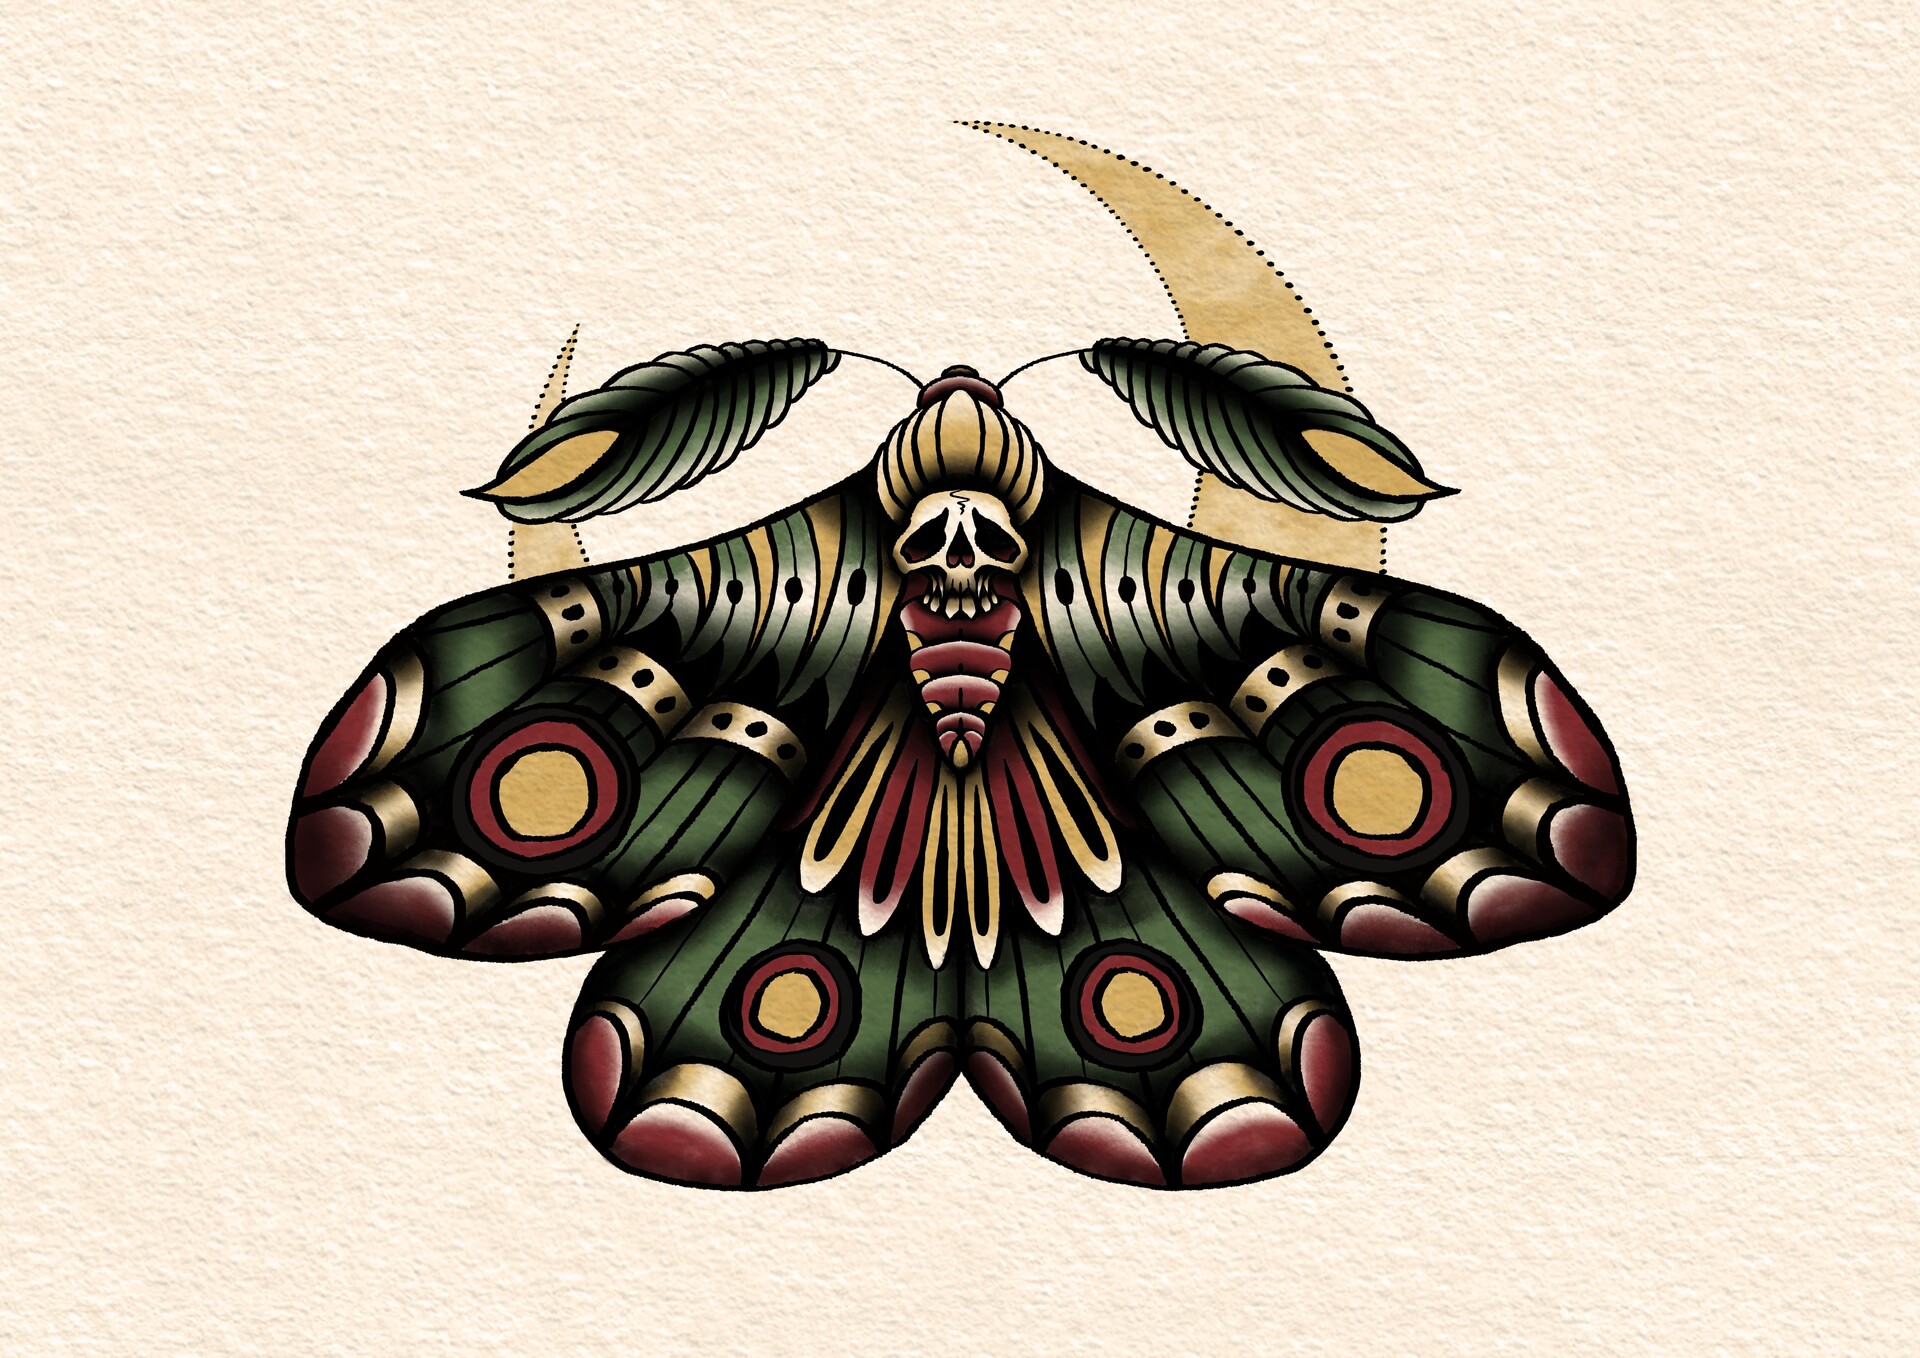 ArtStation - Traditional Death Moth - Tattoo Inspired Illustration